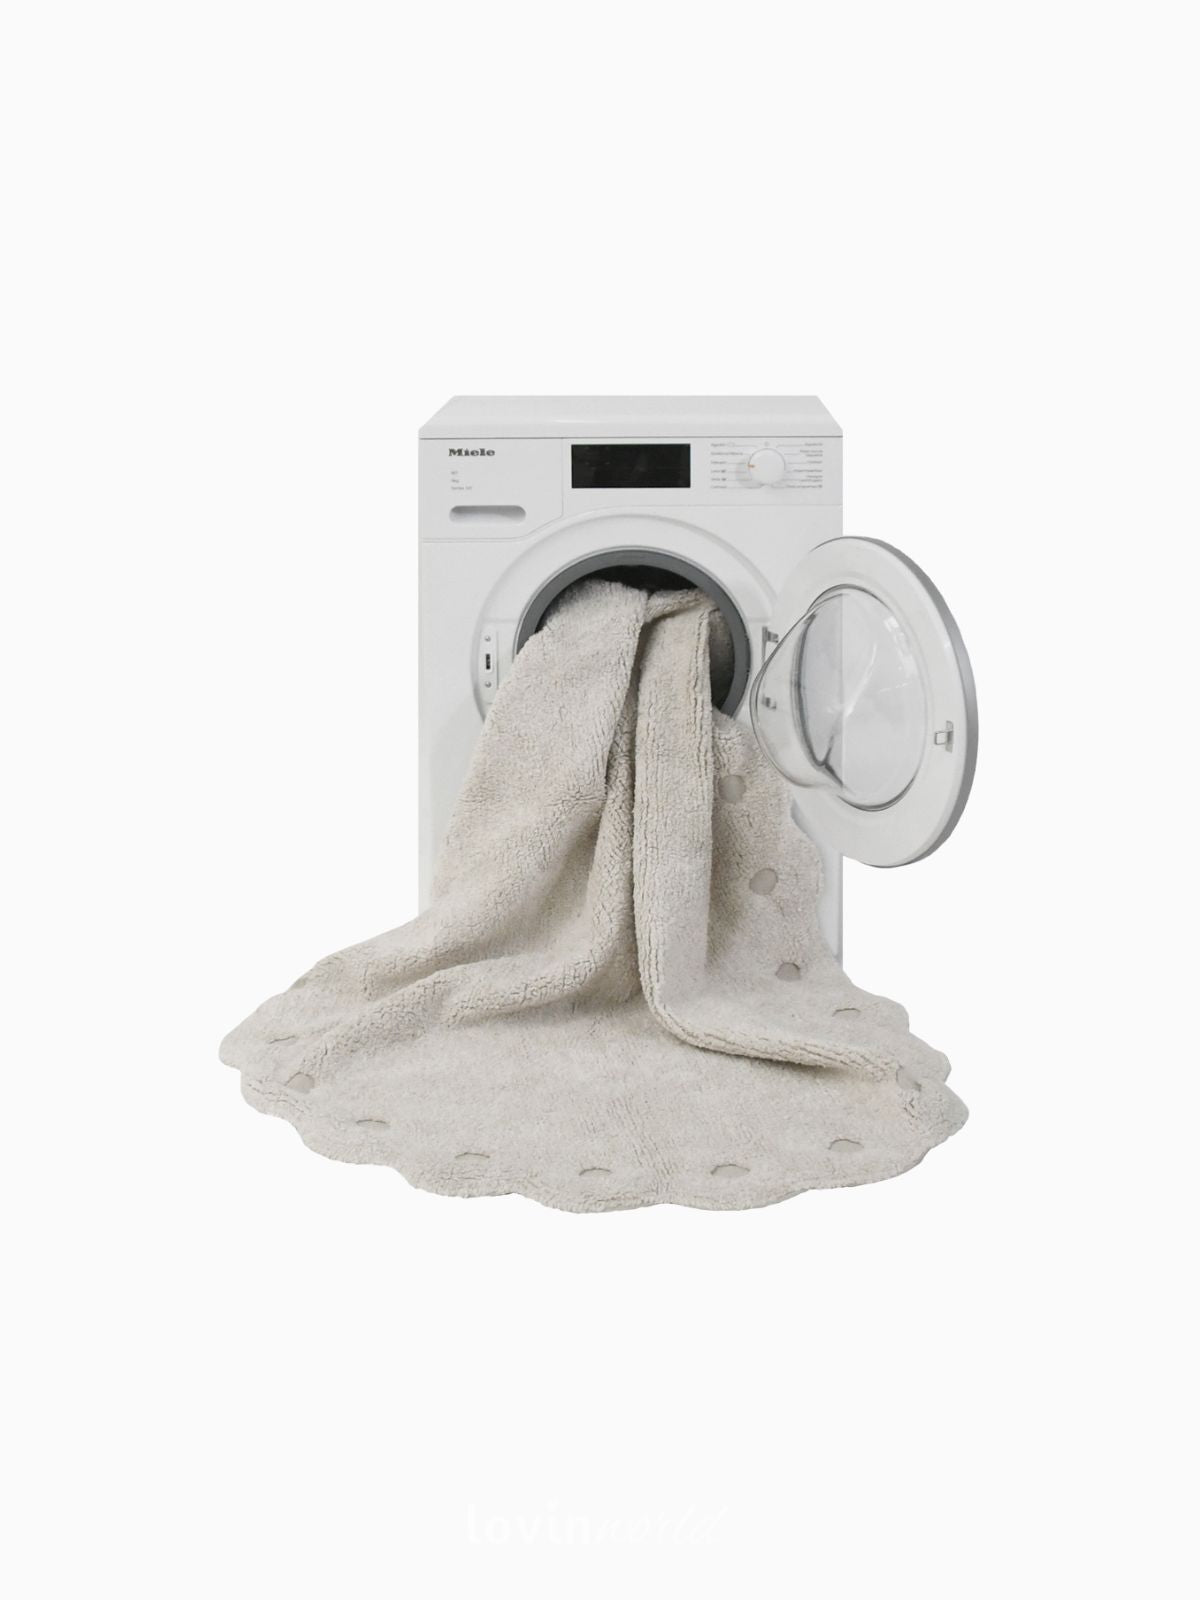 Tappeto in cotone lavabile Picone, in colore Avorio-5